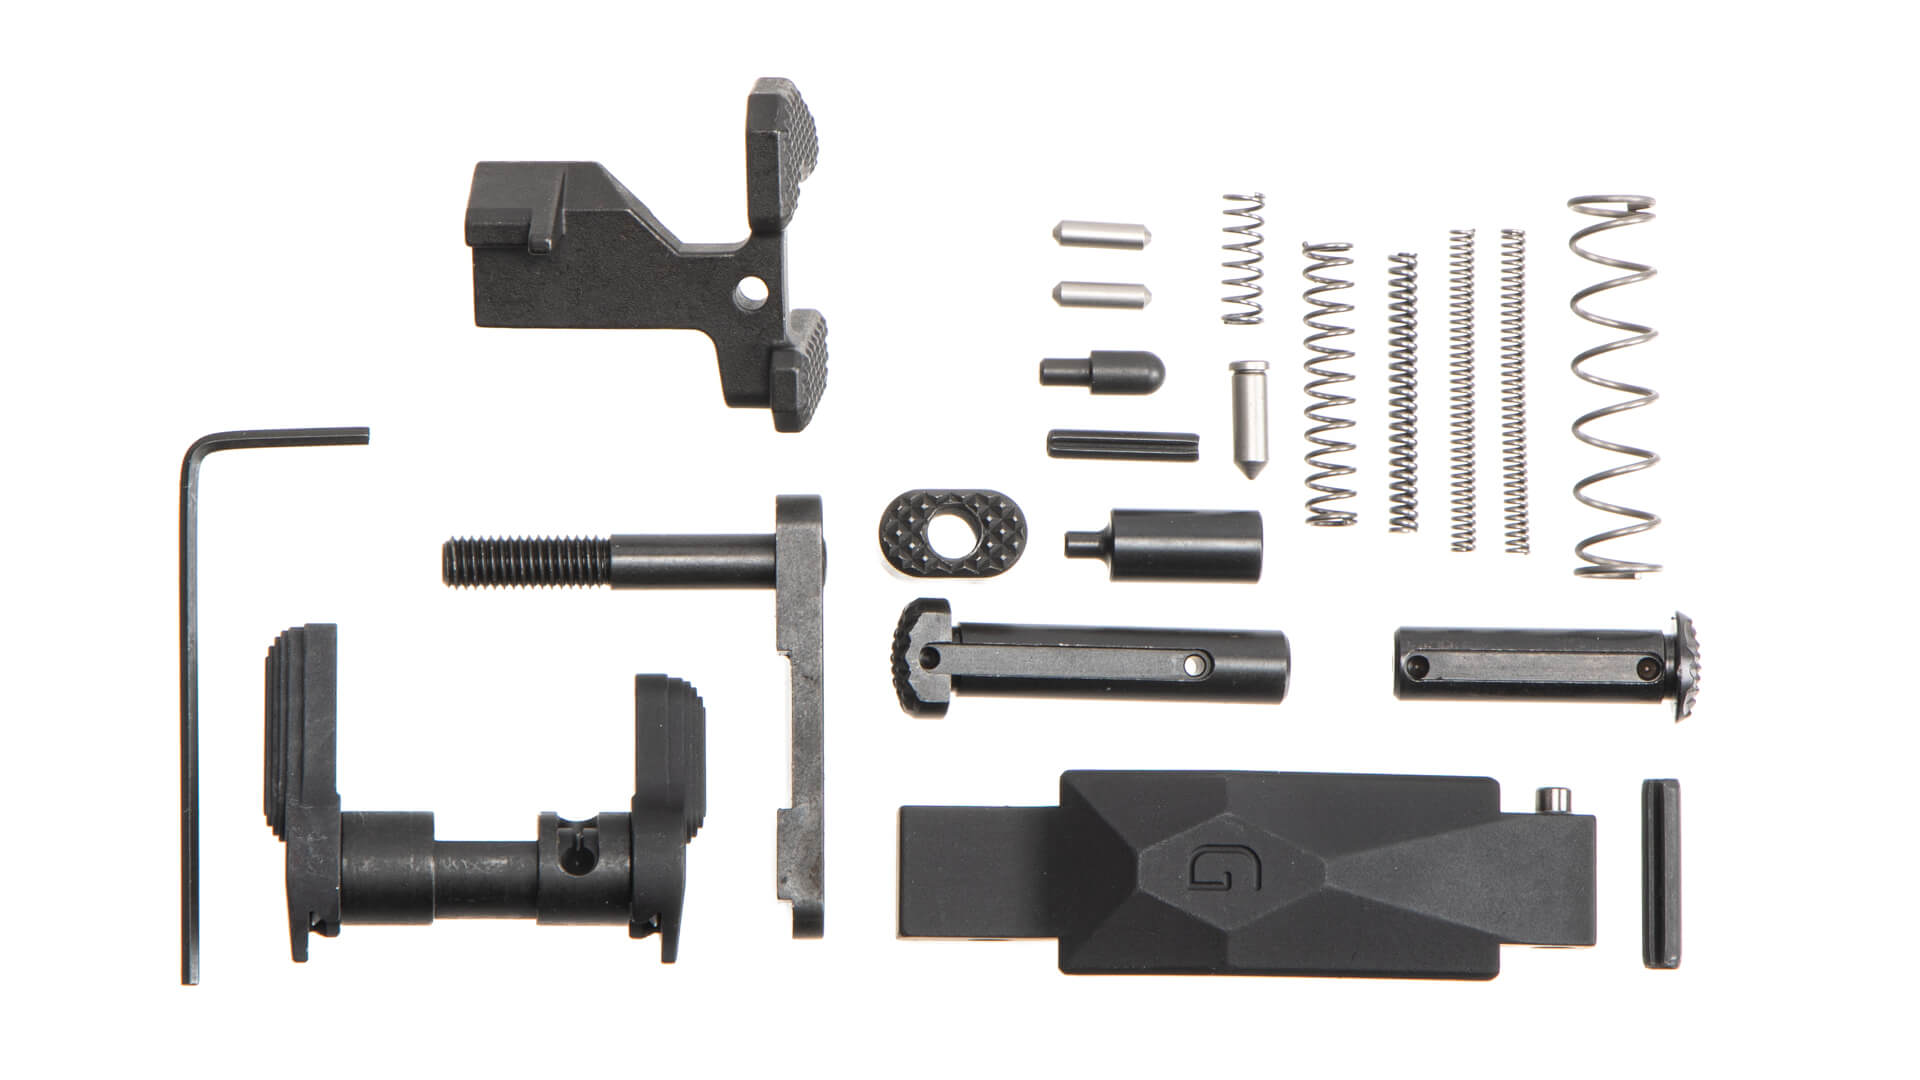 Geissele Ultra Duty Lower Parts Kit No Grip - Black